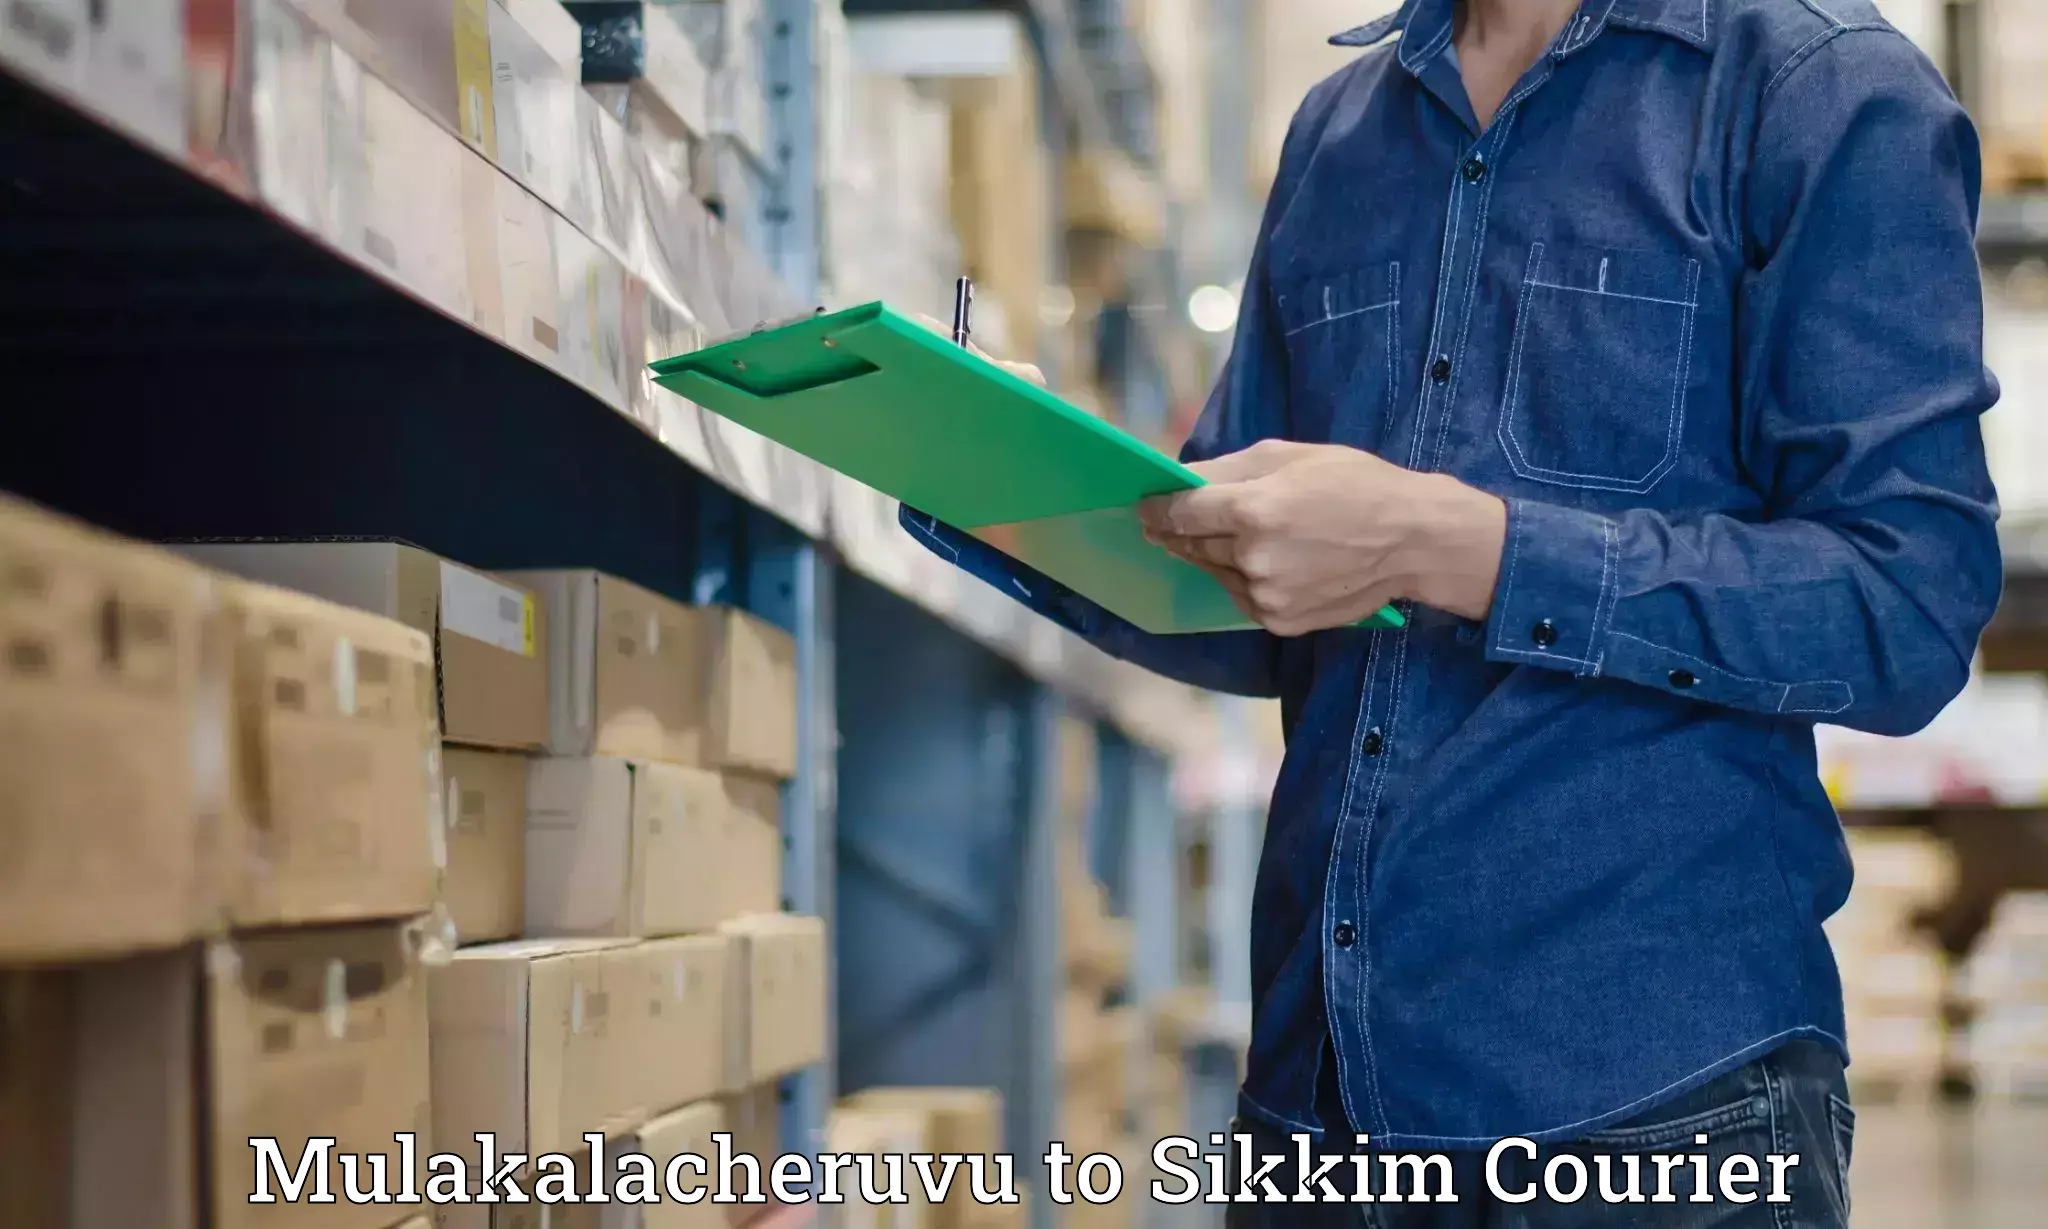 Efficient logistics management Mulakalacheruvu to South Sikkim